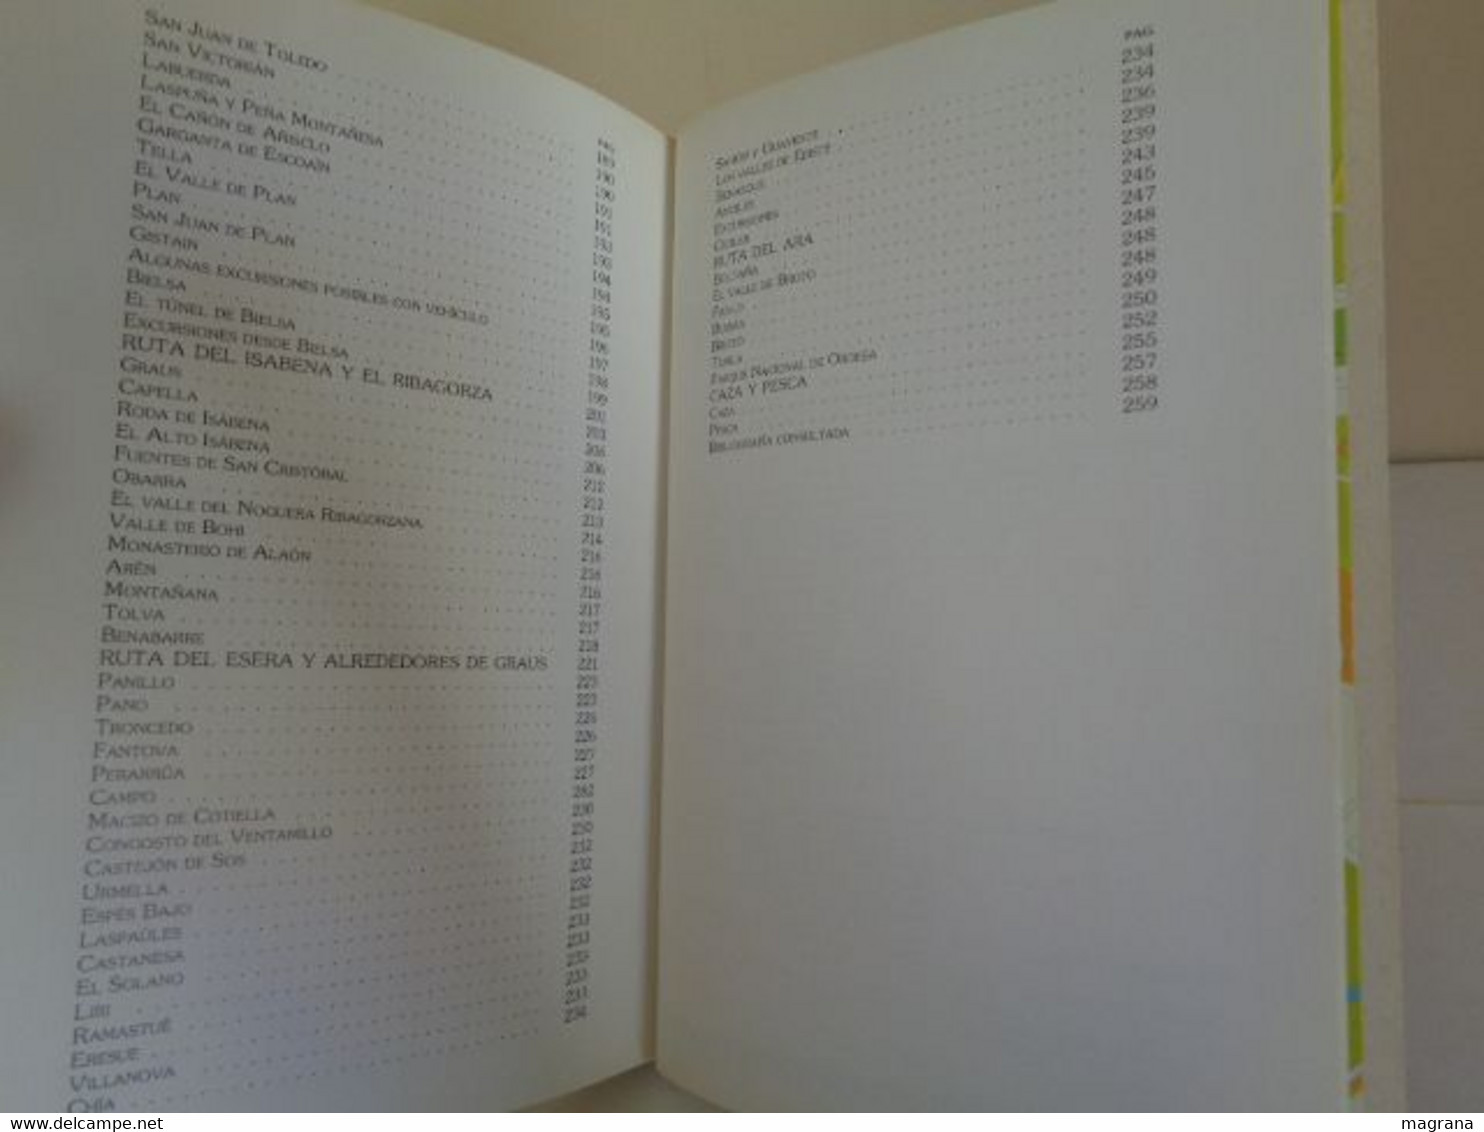 Barbastro. Libro-Guía. Segunda Edición 1990. Edita Excelentísimo Ayuntamiento De Barbastro. 269 Pp - Geschiedenis & Kunst